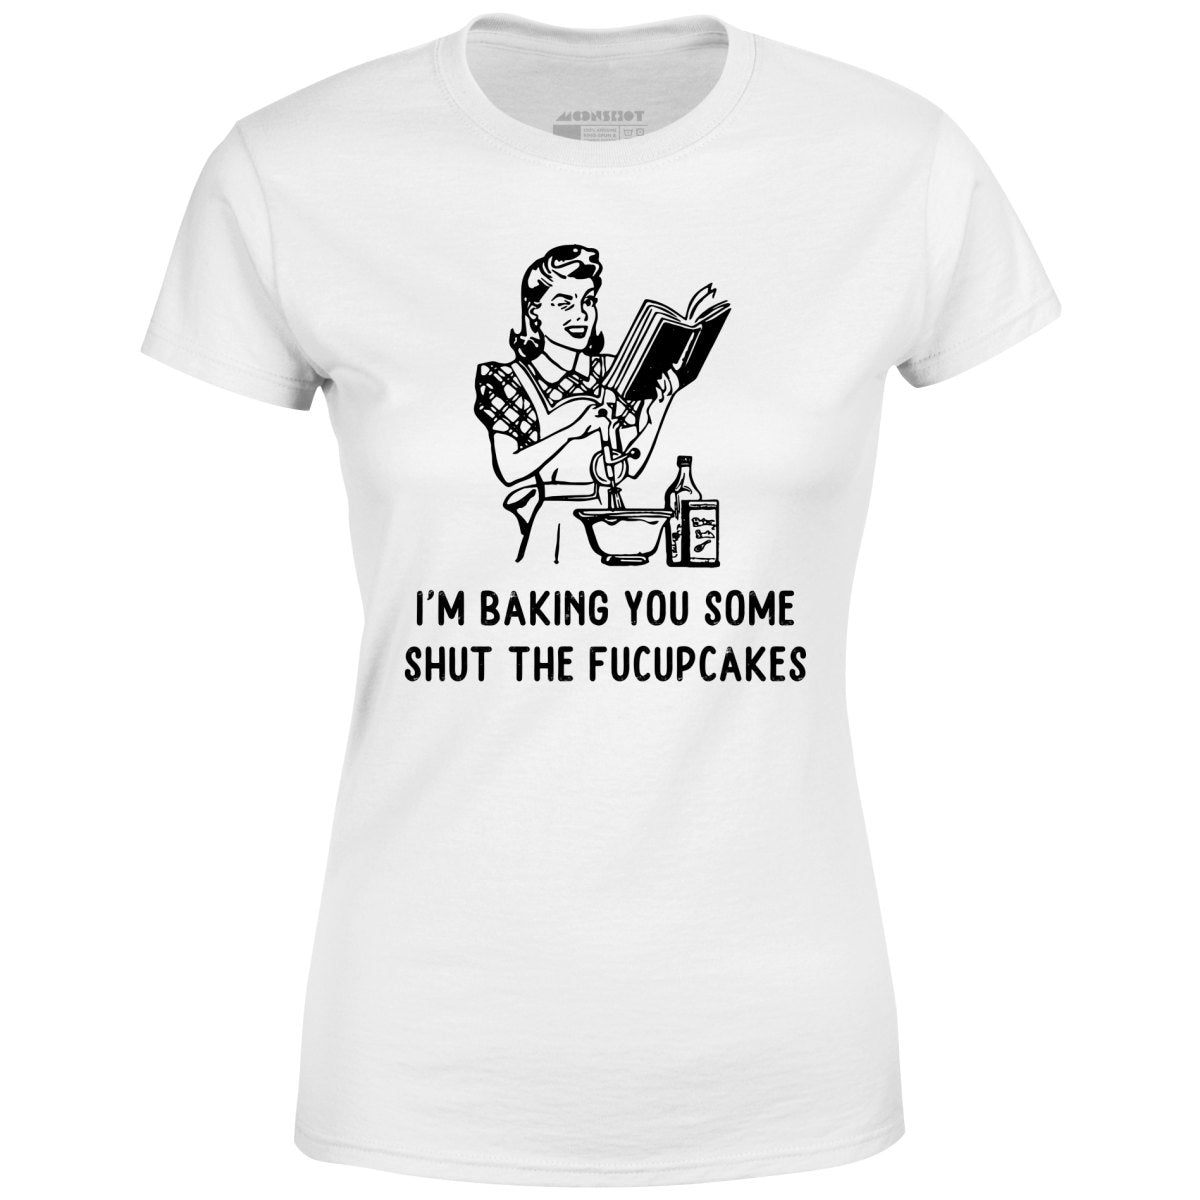 I'm Baking You Some Shut The Fucupcakes - Women's T-Shirt